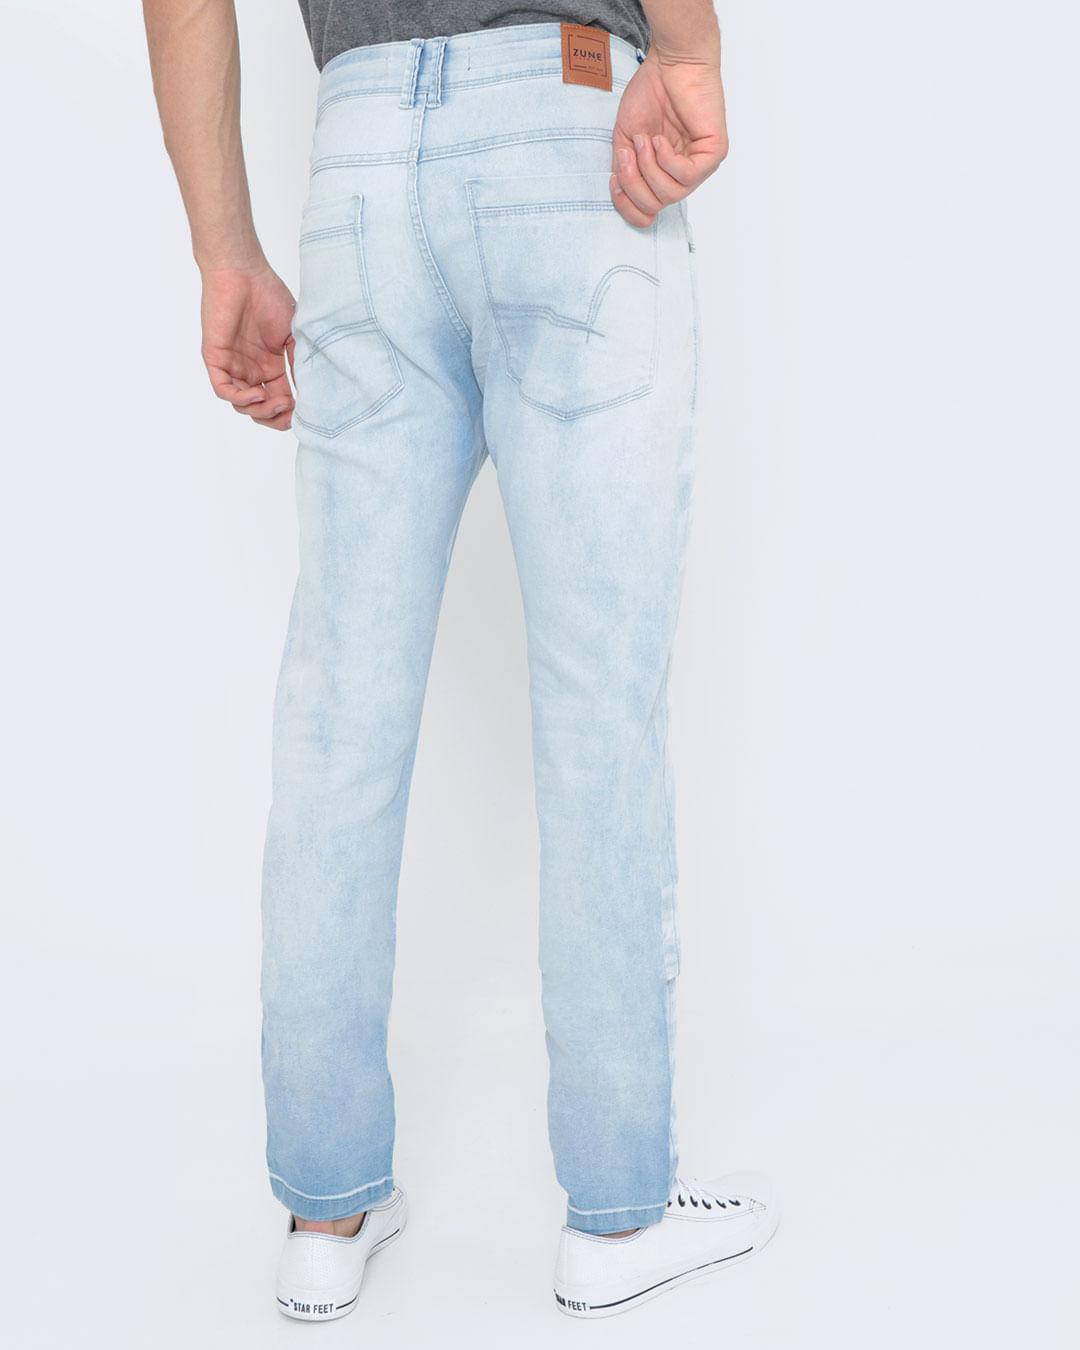 Calca-Masculina-Delave-Zune-Jeans-Azul-Claro